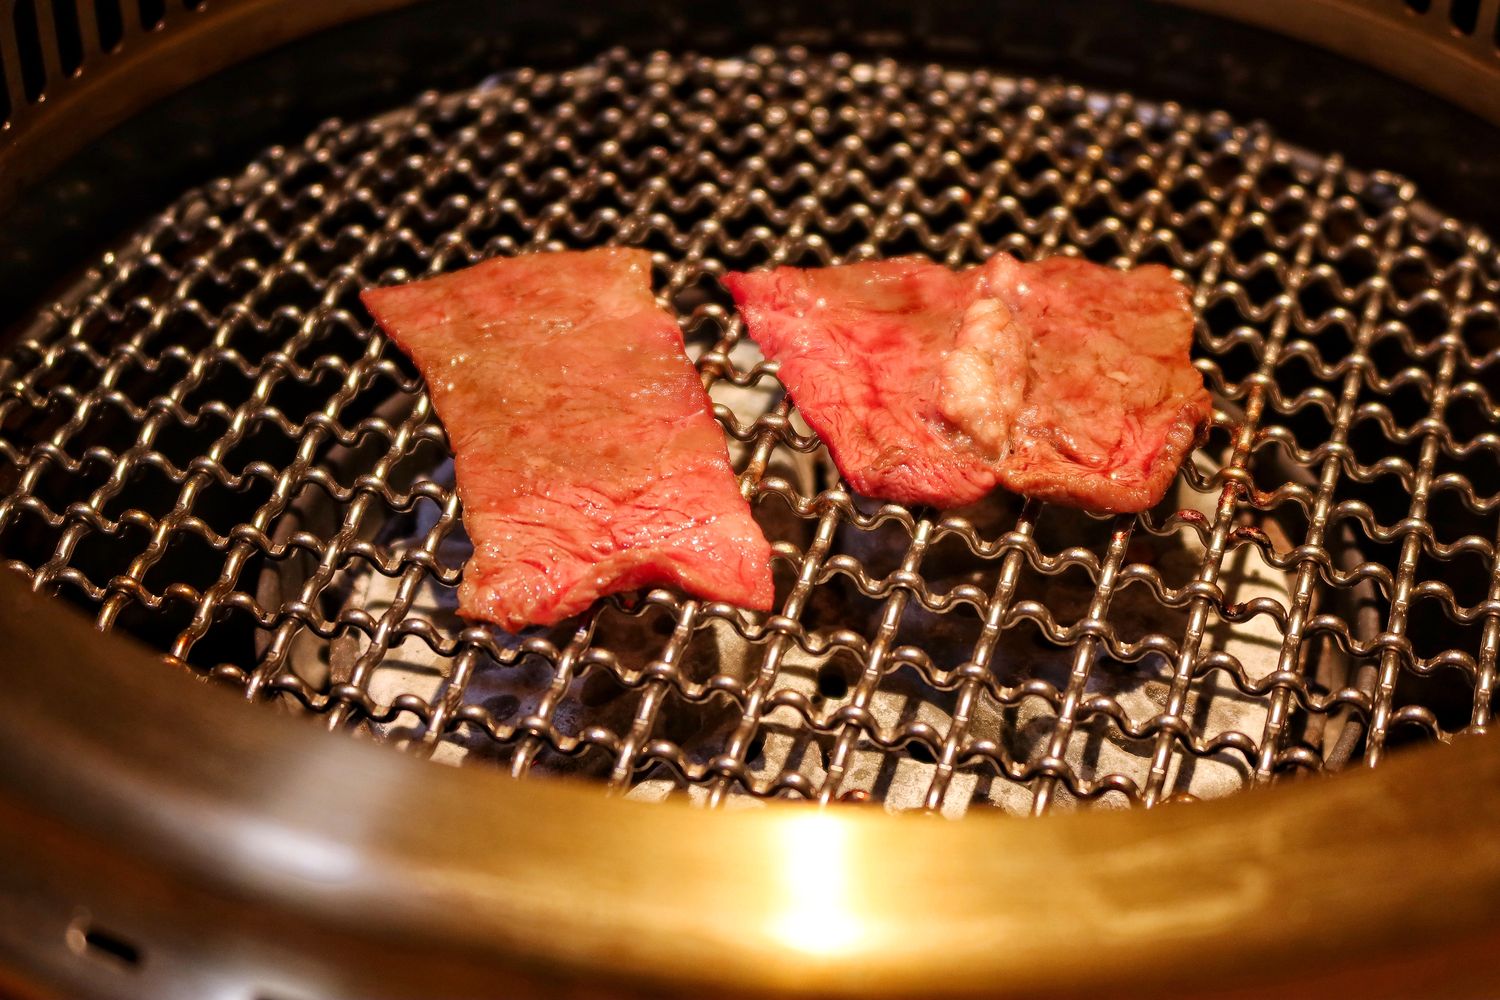 【台中燒肉推薦】NikuNiku 台中肉肉燒肉朝馬店，厚切黑毛牛排鮮嫩帶汁，必吃特製絕品燒肉銷魂美味! @珊莎Blog